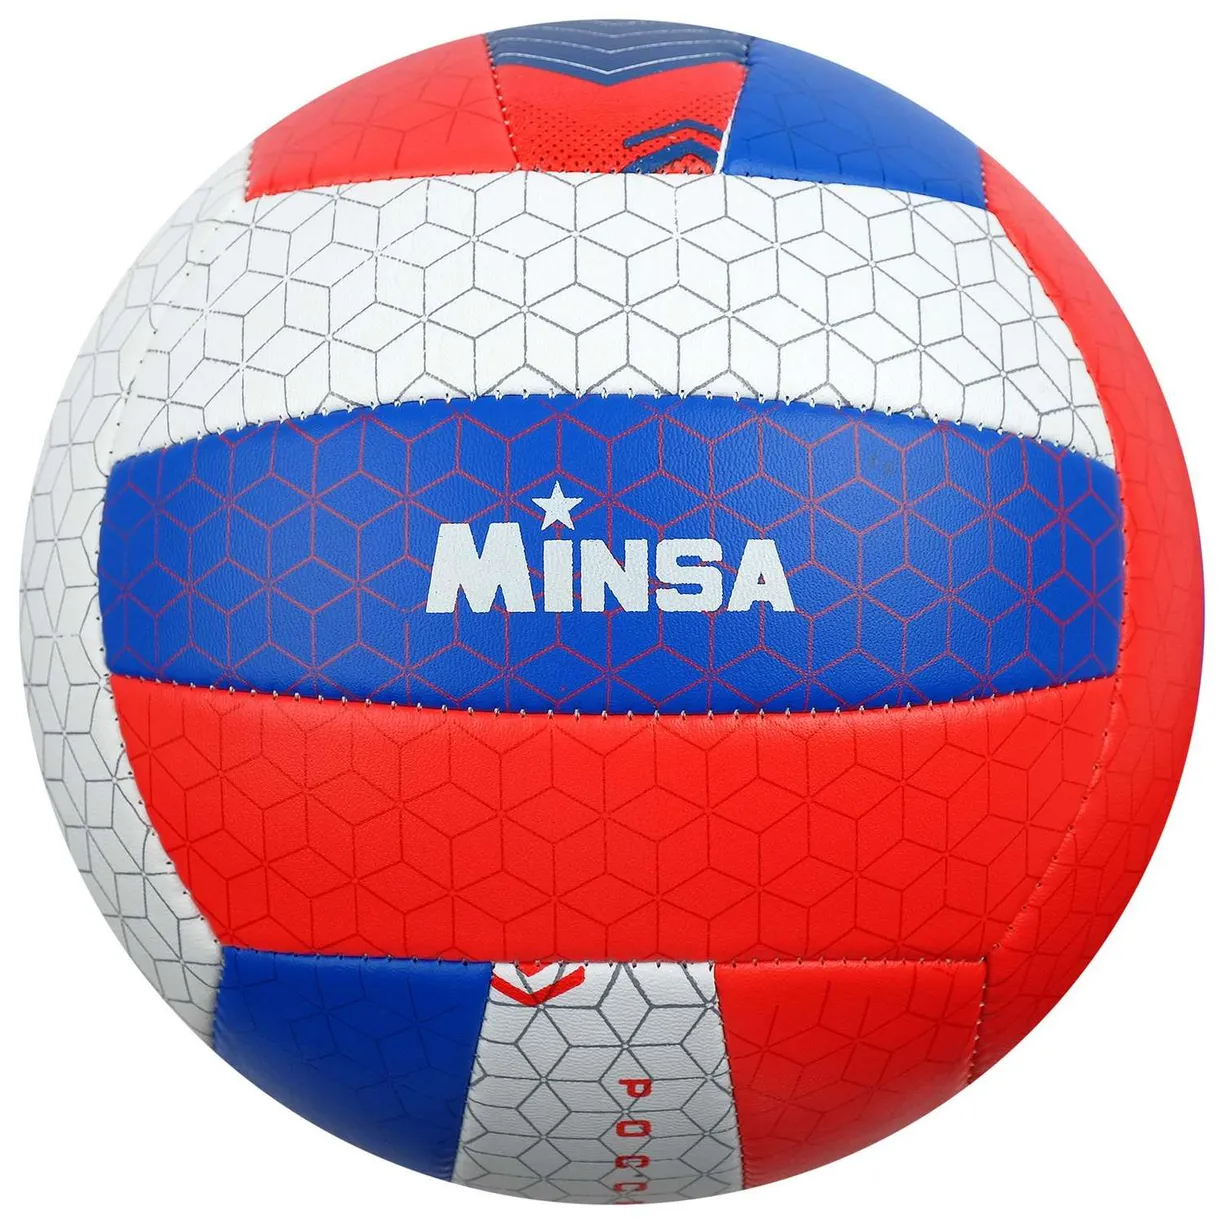 Мяч волейбольный Minsa Россия размер 5 мячи minsa мяч волейбольный размер 5